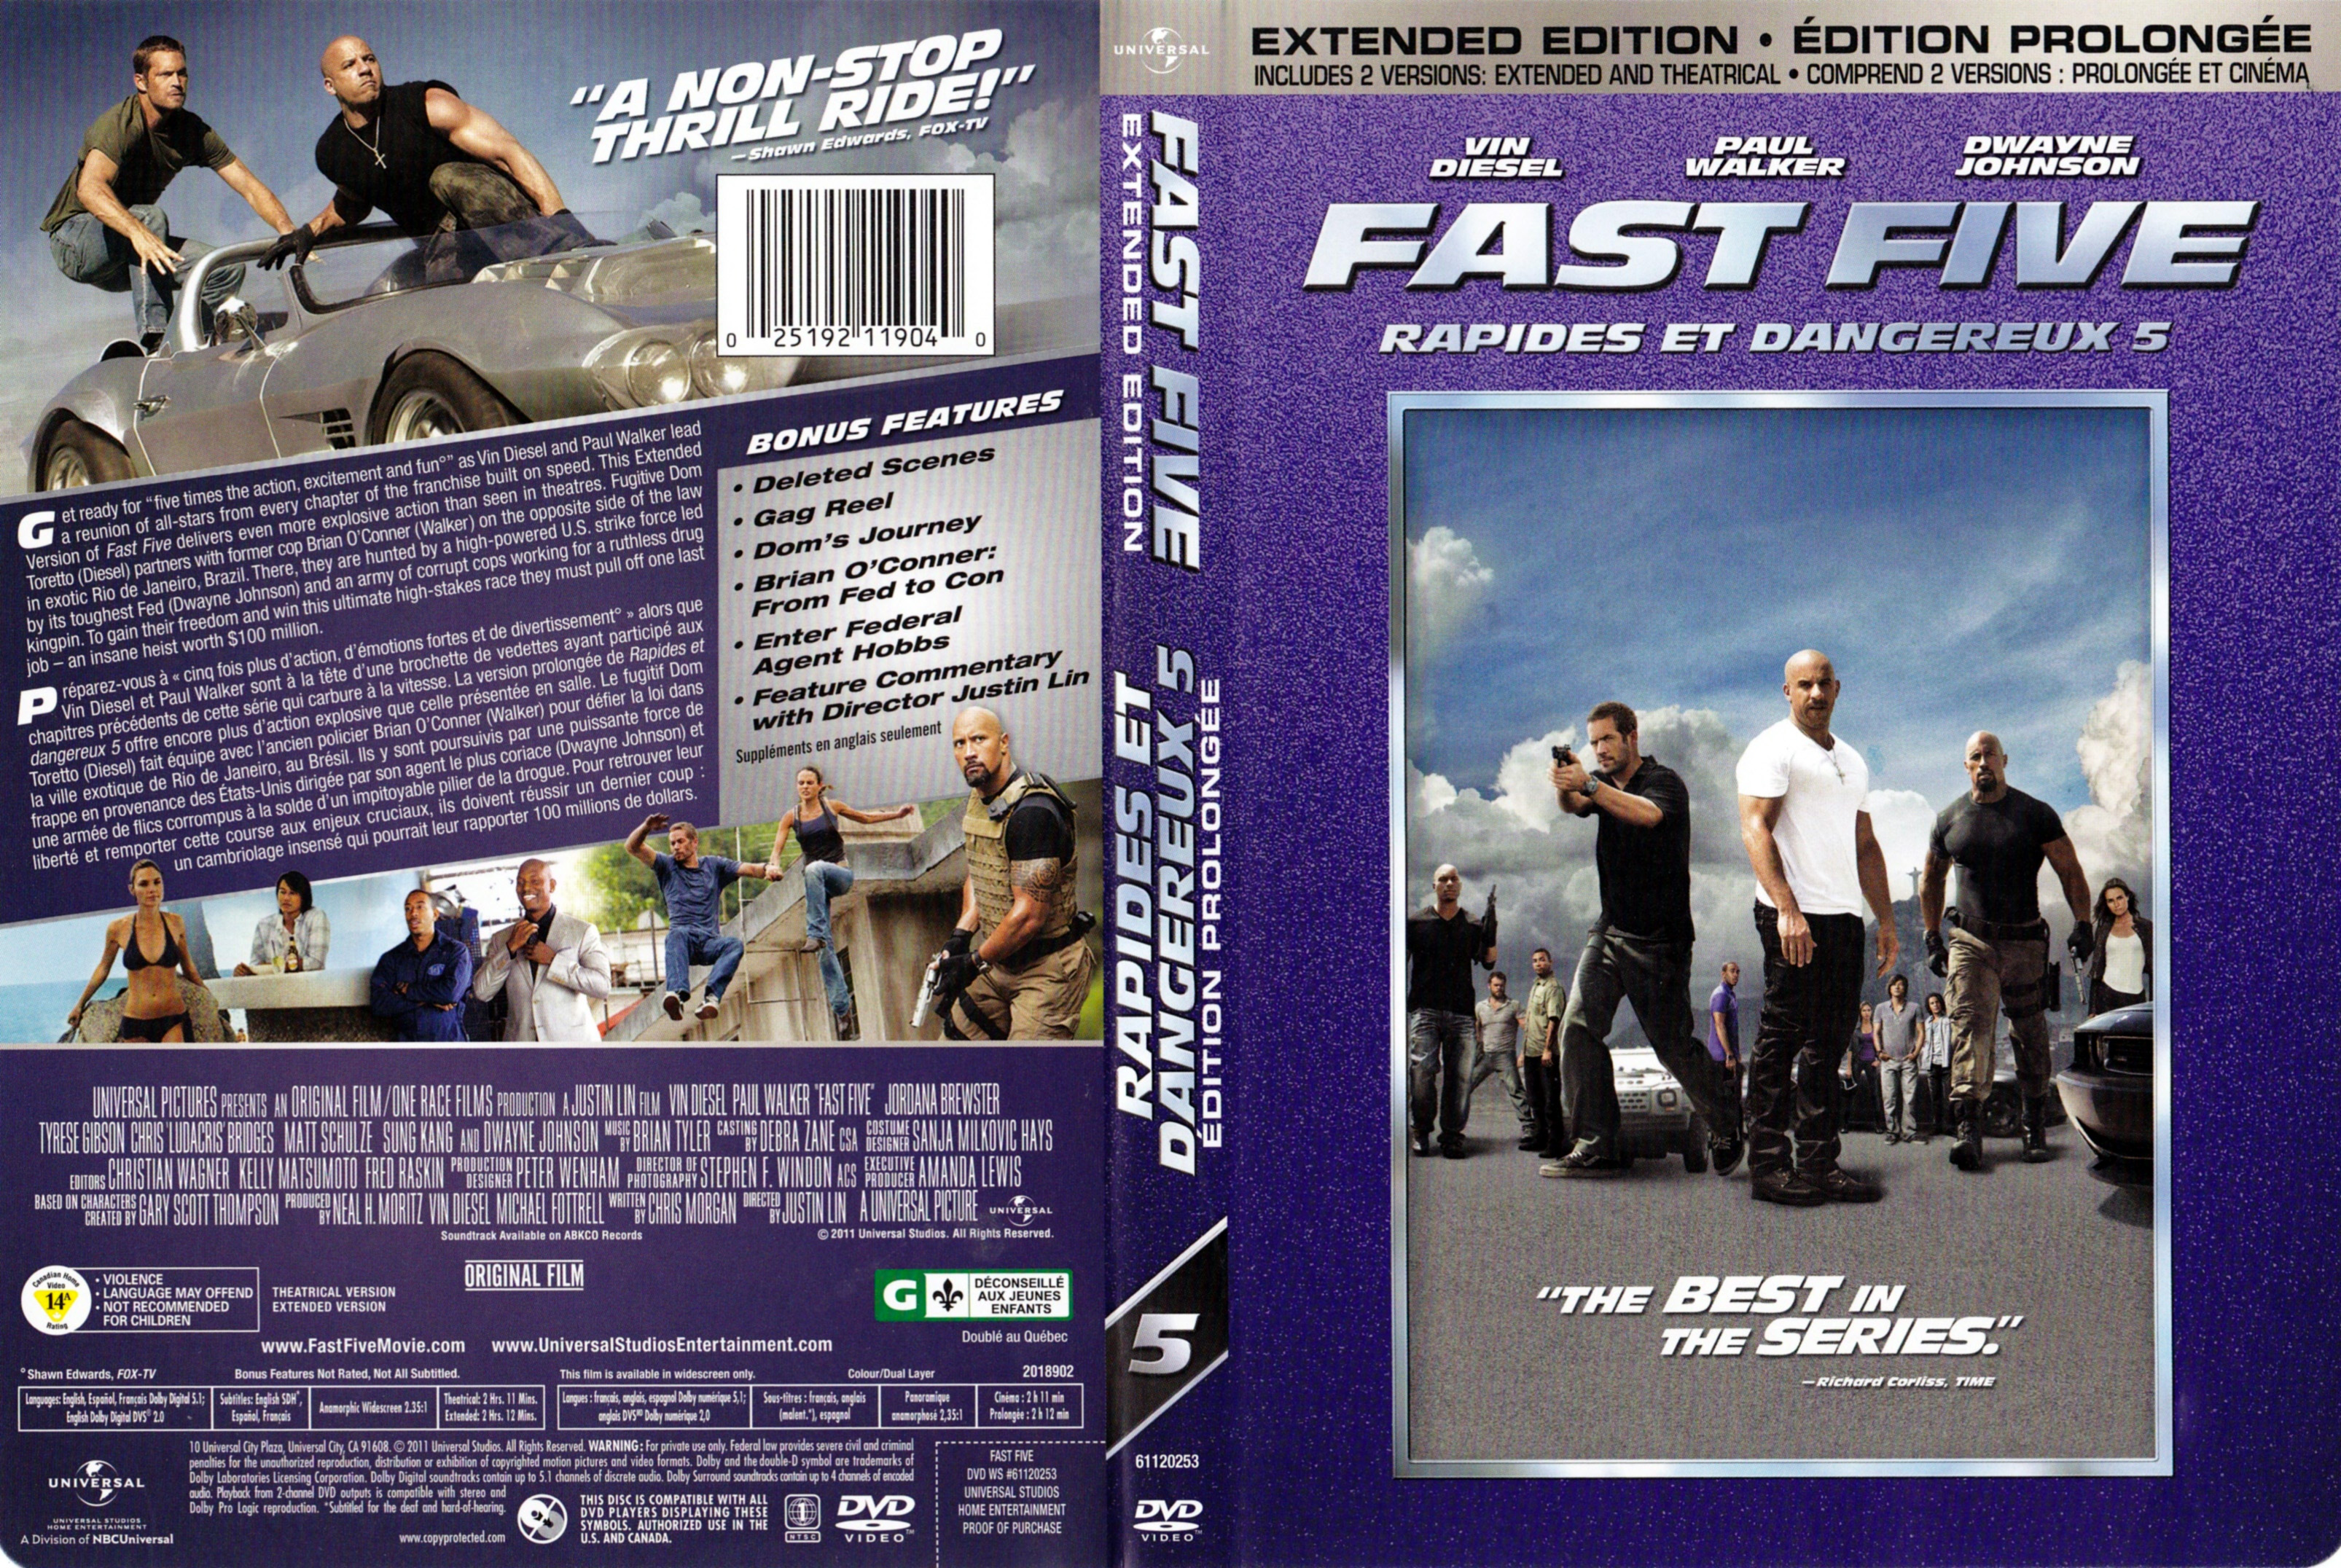 Jaquette DVD Rapide et dangereux 5 - Fast five (Canadienne)